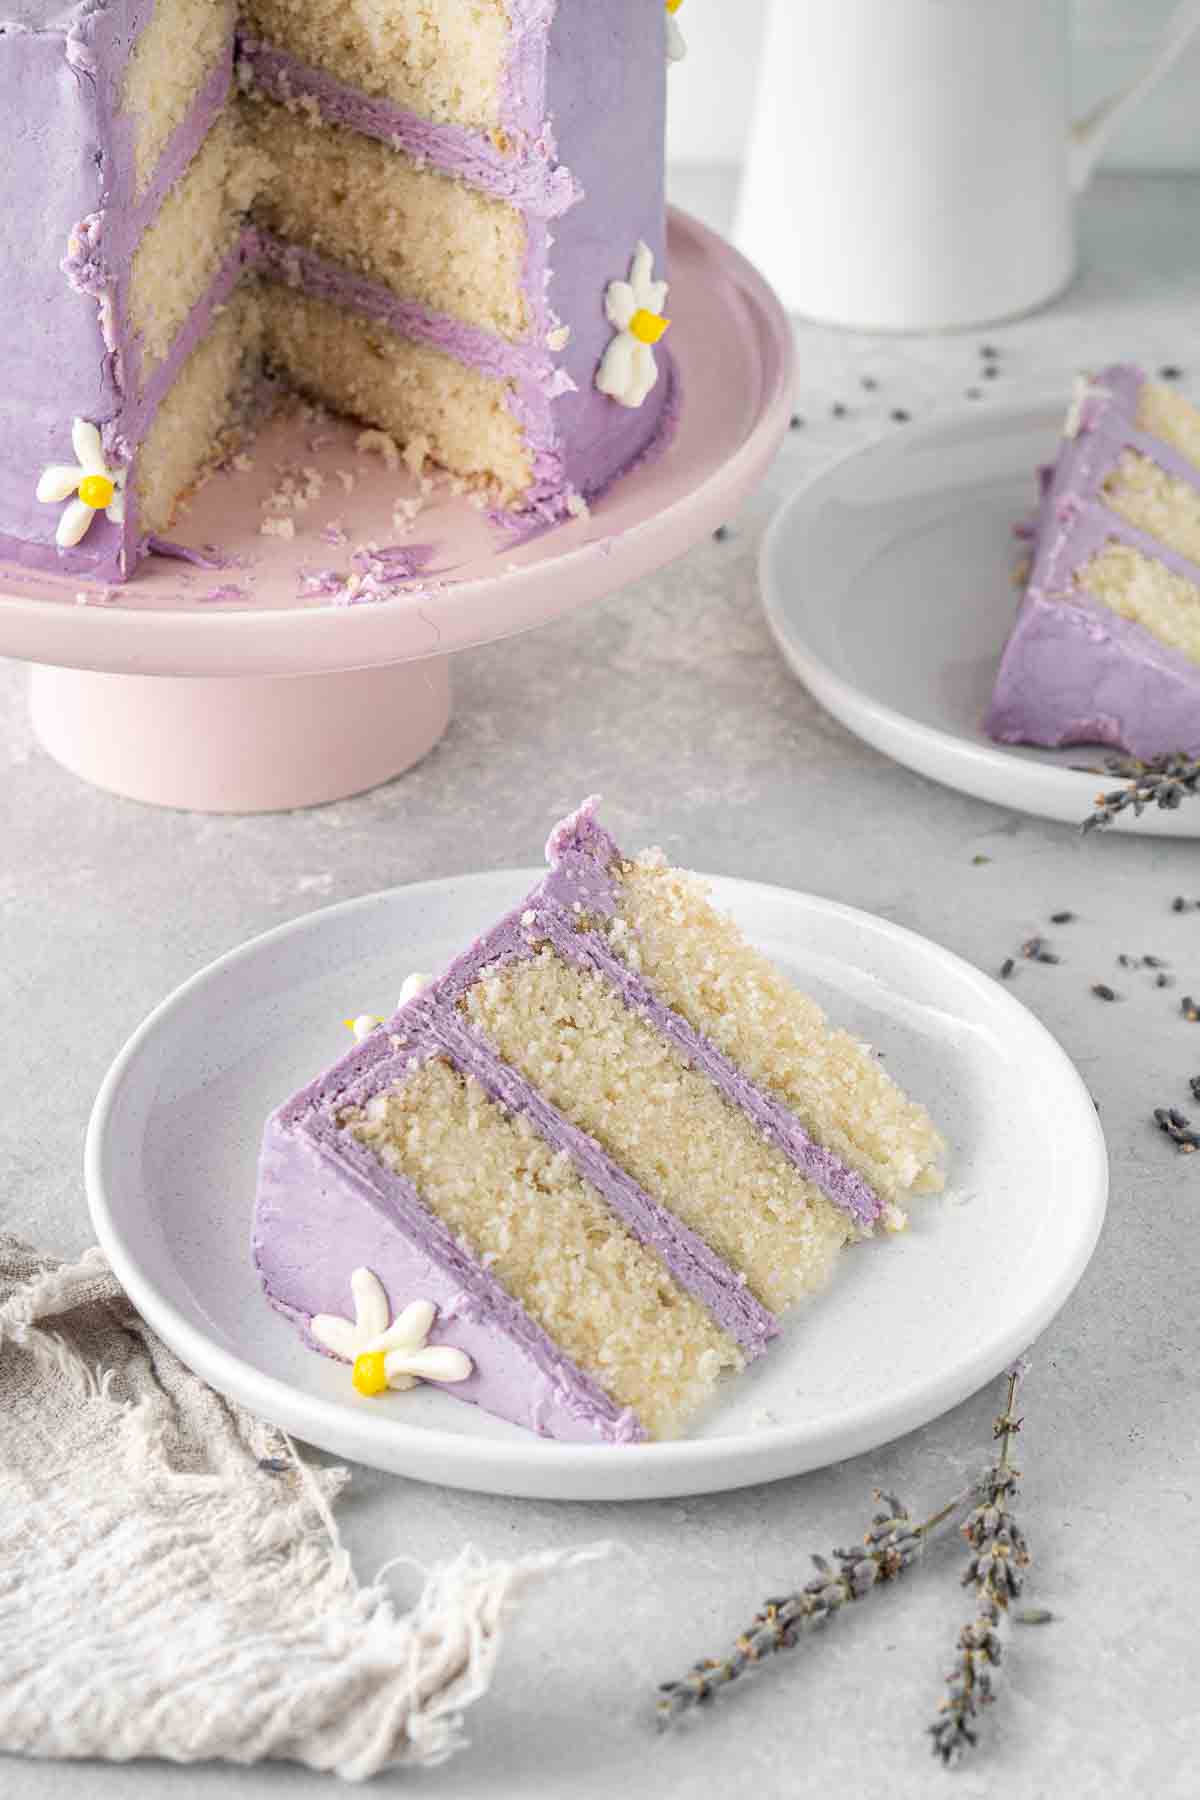 A slice of vegan lemon cake with lavender buttercream.